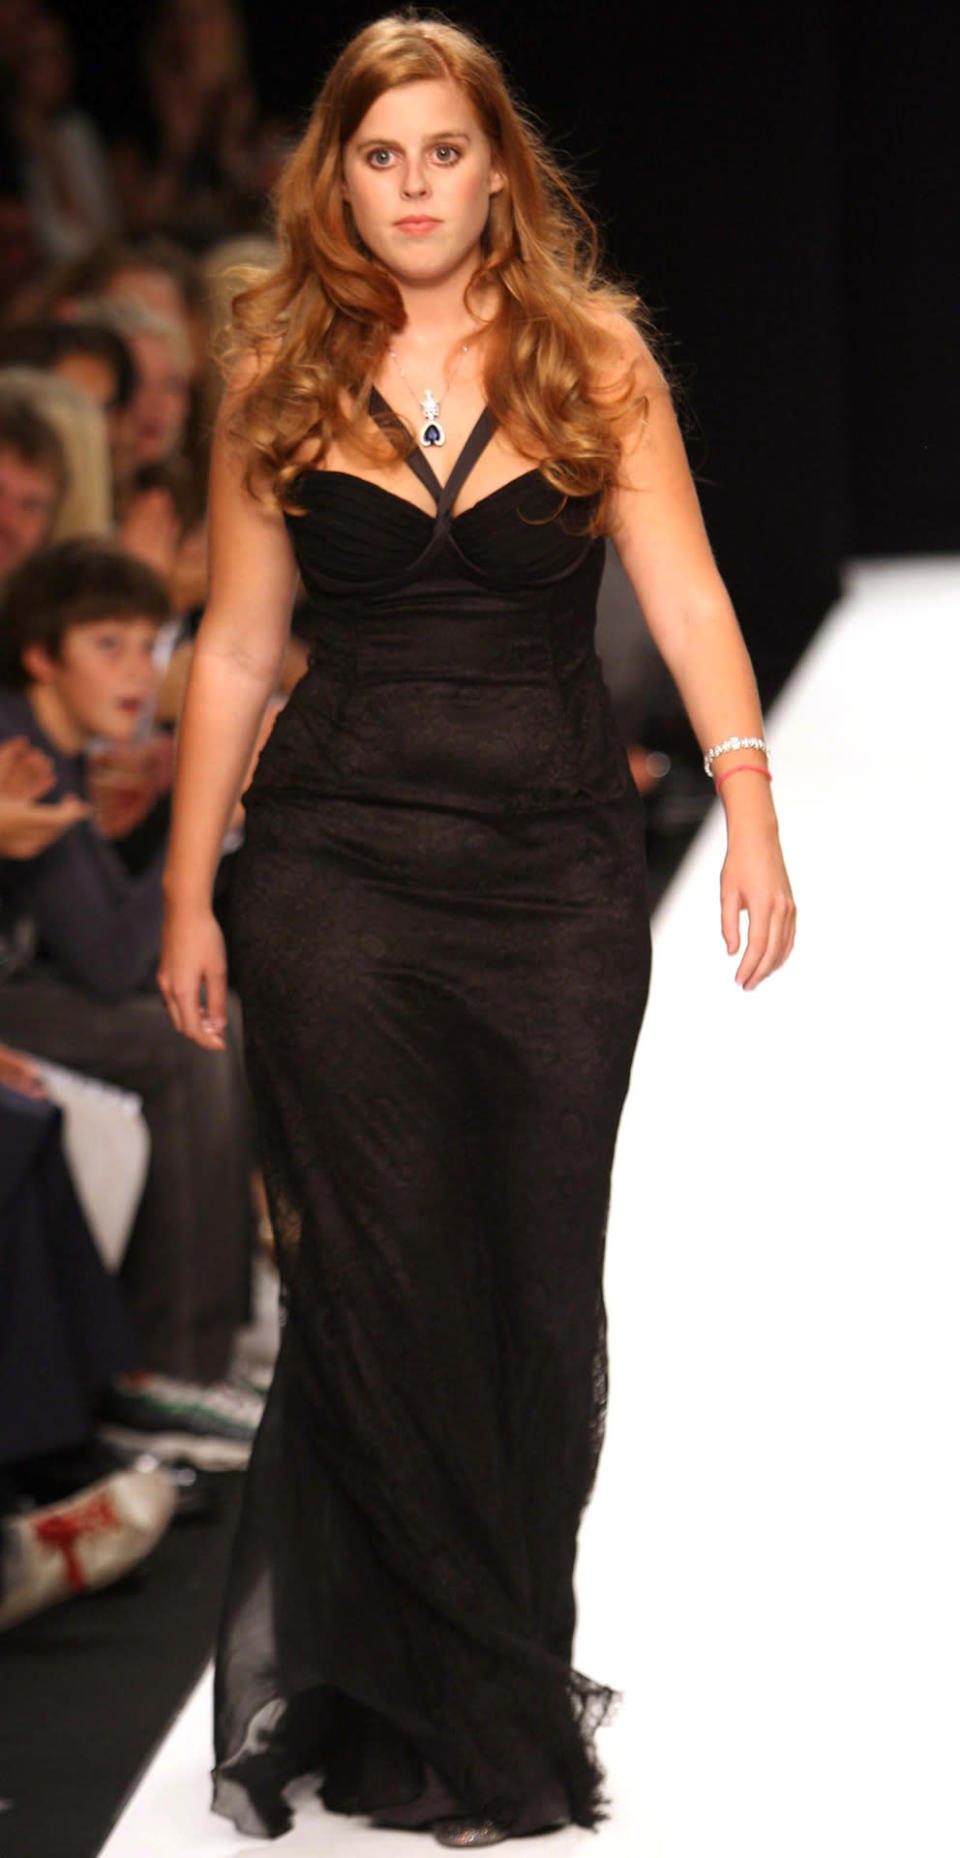 2007 mausert sich Beatrice endgültig von schüchternen Entlein zum wunderschönen Schwan. Bei der London Fashion Week darf sie sogar über den Catwalk laufen und präsentiert dabei ihr ganzes Sex-Appeal in einem schlichten, schwarzen Abendkleid.